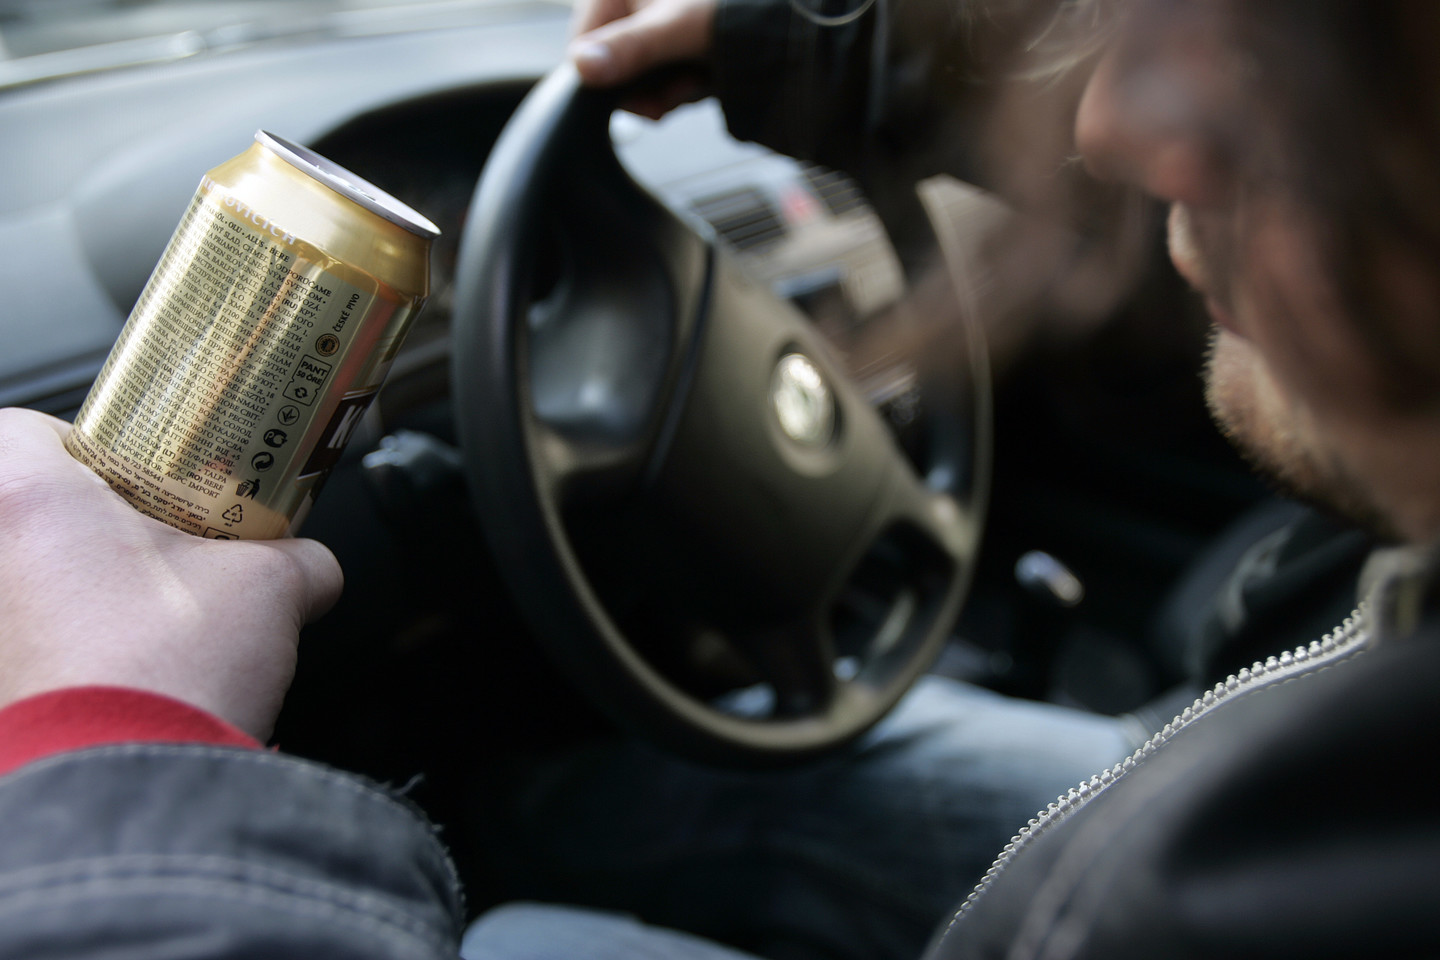 Seime pasigirdo siūlymai didinti leistiną alkoholio kiekį kraujyje vairuotojams.<br> V.Balkūno asociatyvi nuotr.